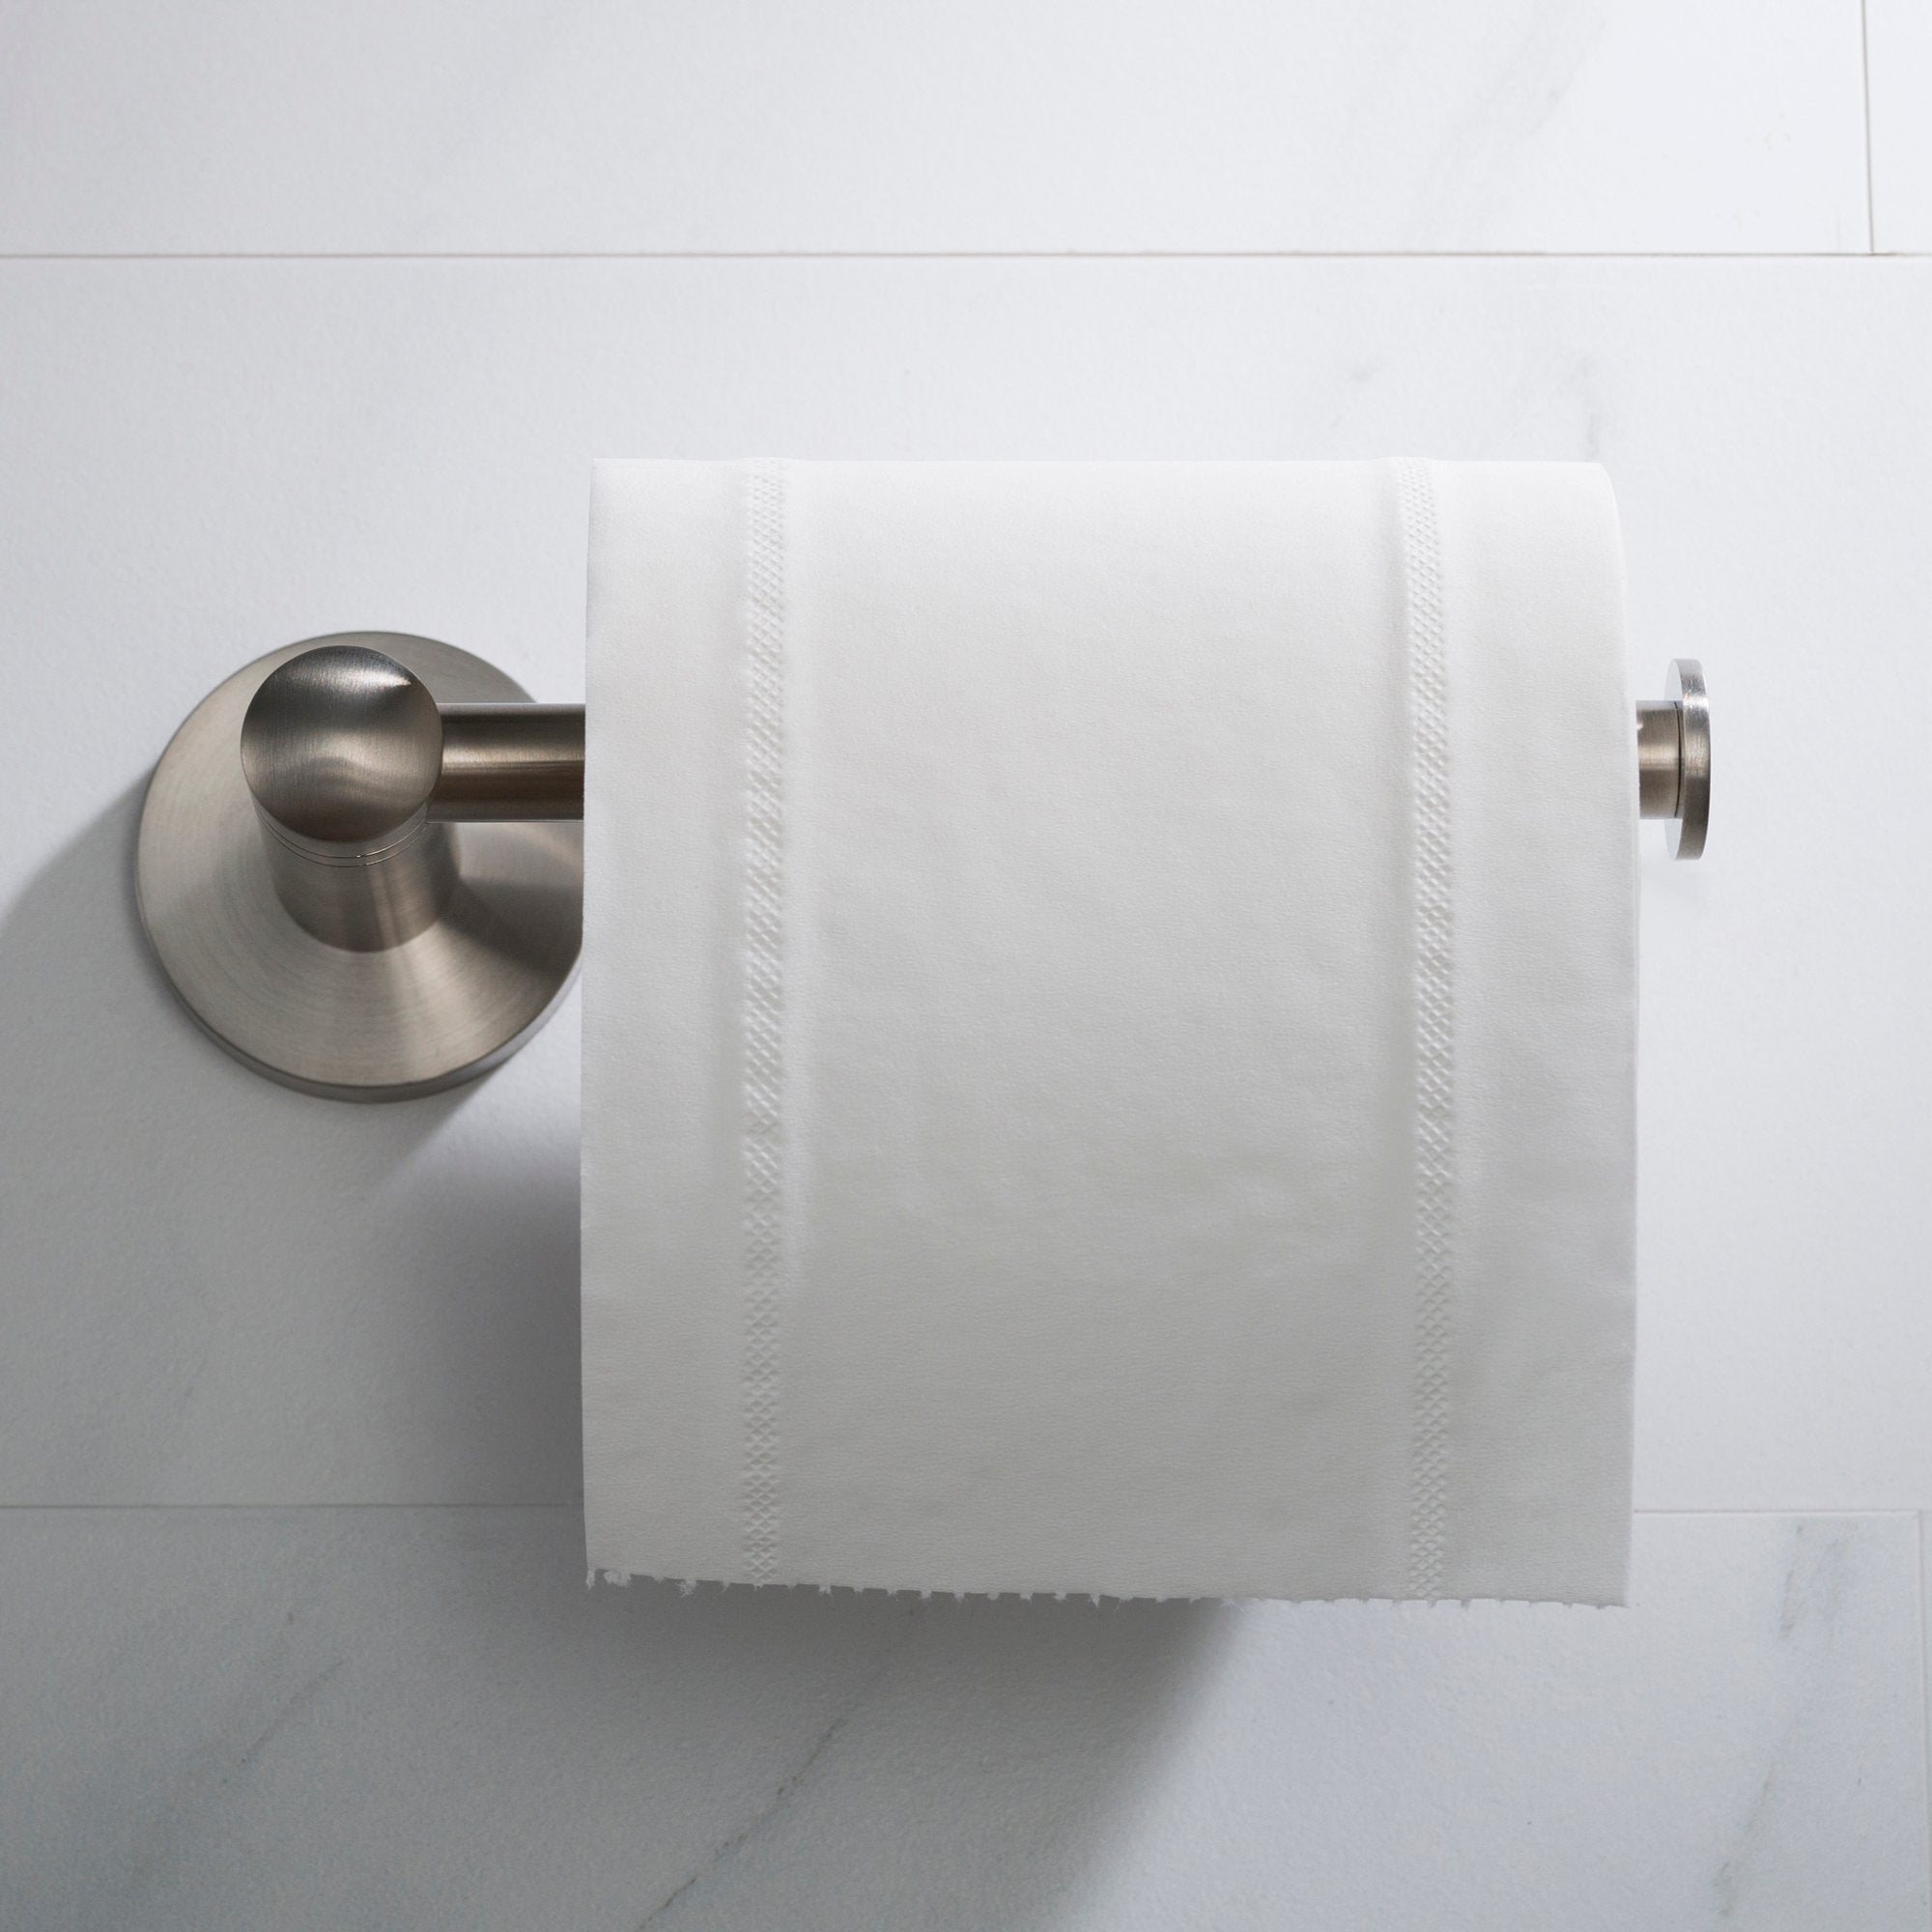 Better Homes & Gardens Standing Toilet Paper Holder, Satin Nickel 